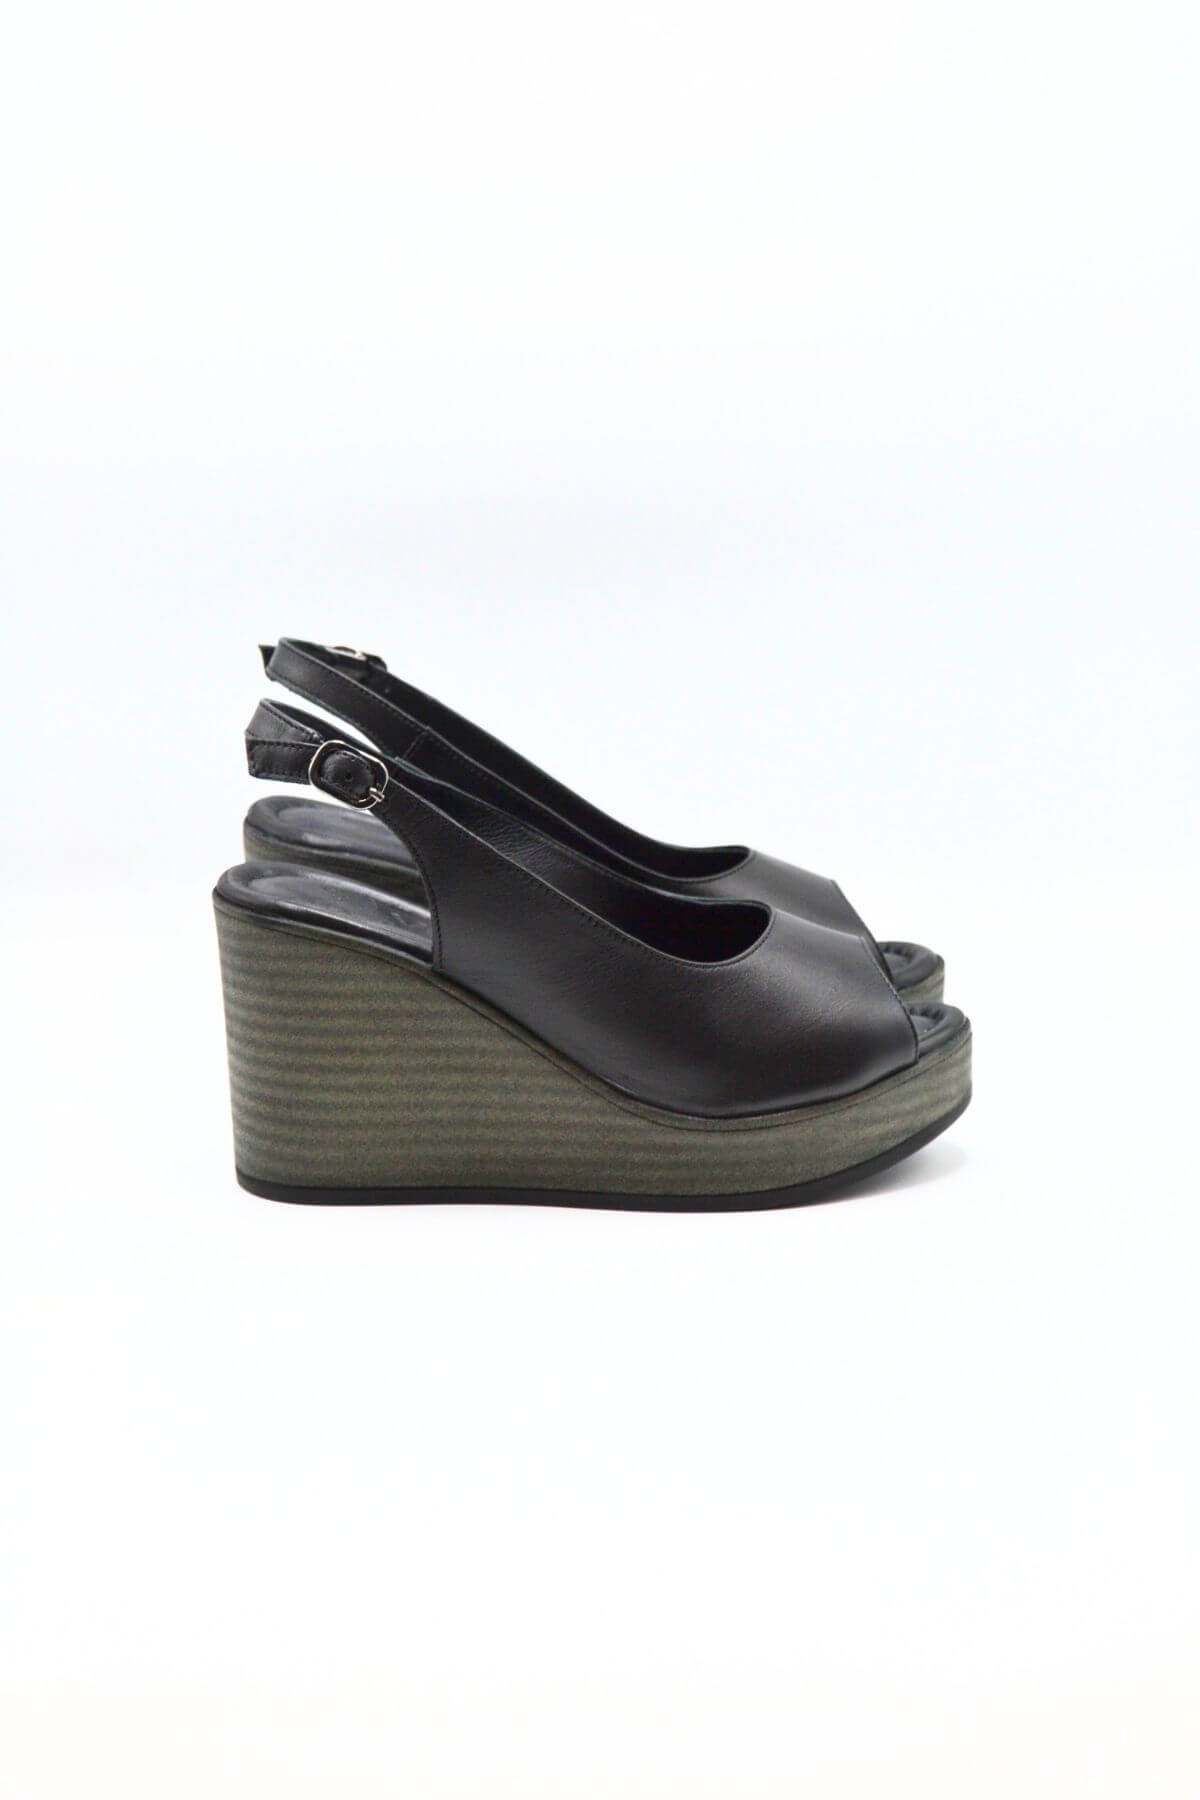 Kadın Dolgu Topuk Deri Sandalet Siyah 2310802Y